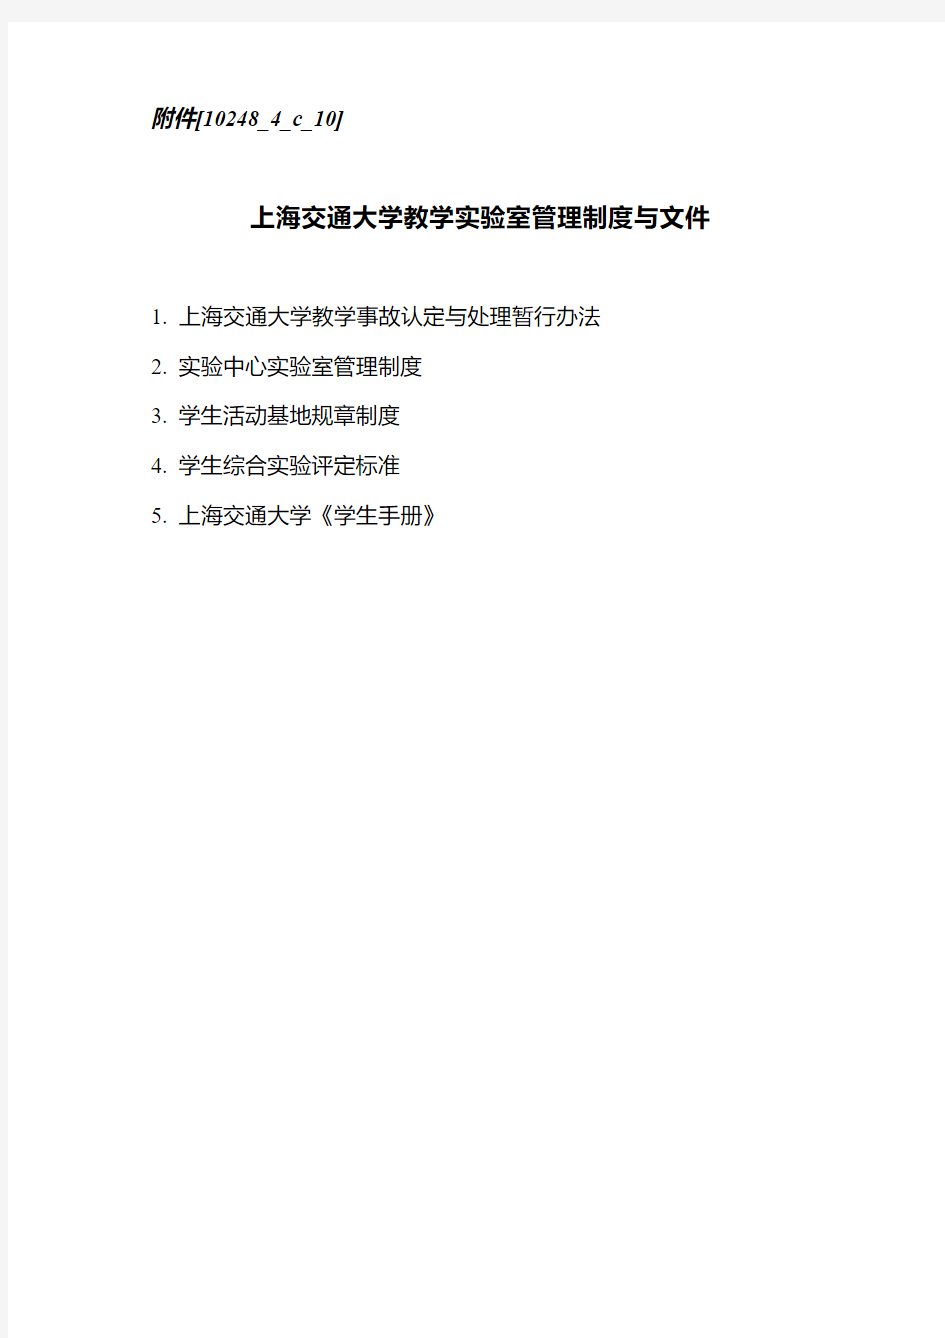 上海交通大学教学实验室管理制度与文件